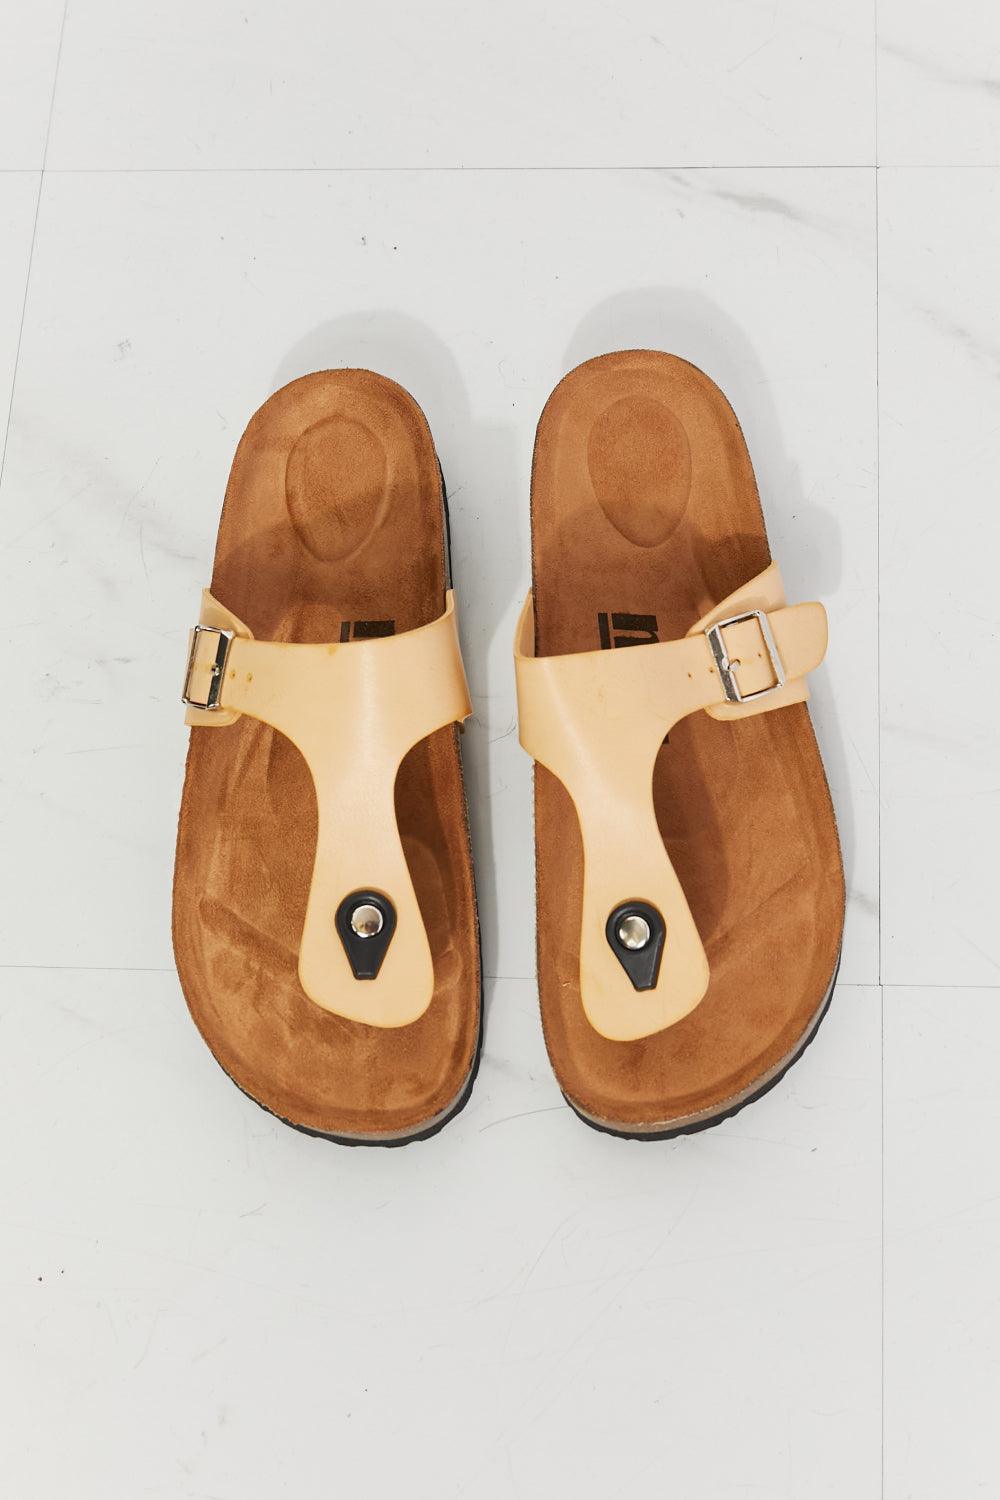 MMShoes Getaway Ready T-Strap Cork Footbed Sandals - MXSTUDIO.COM